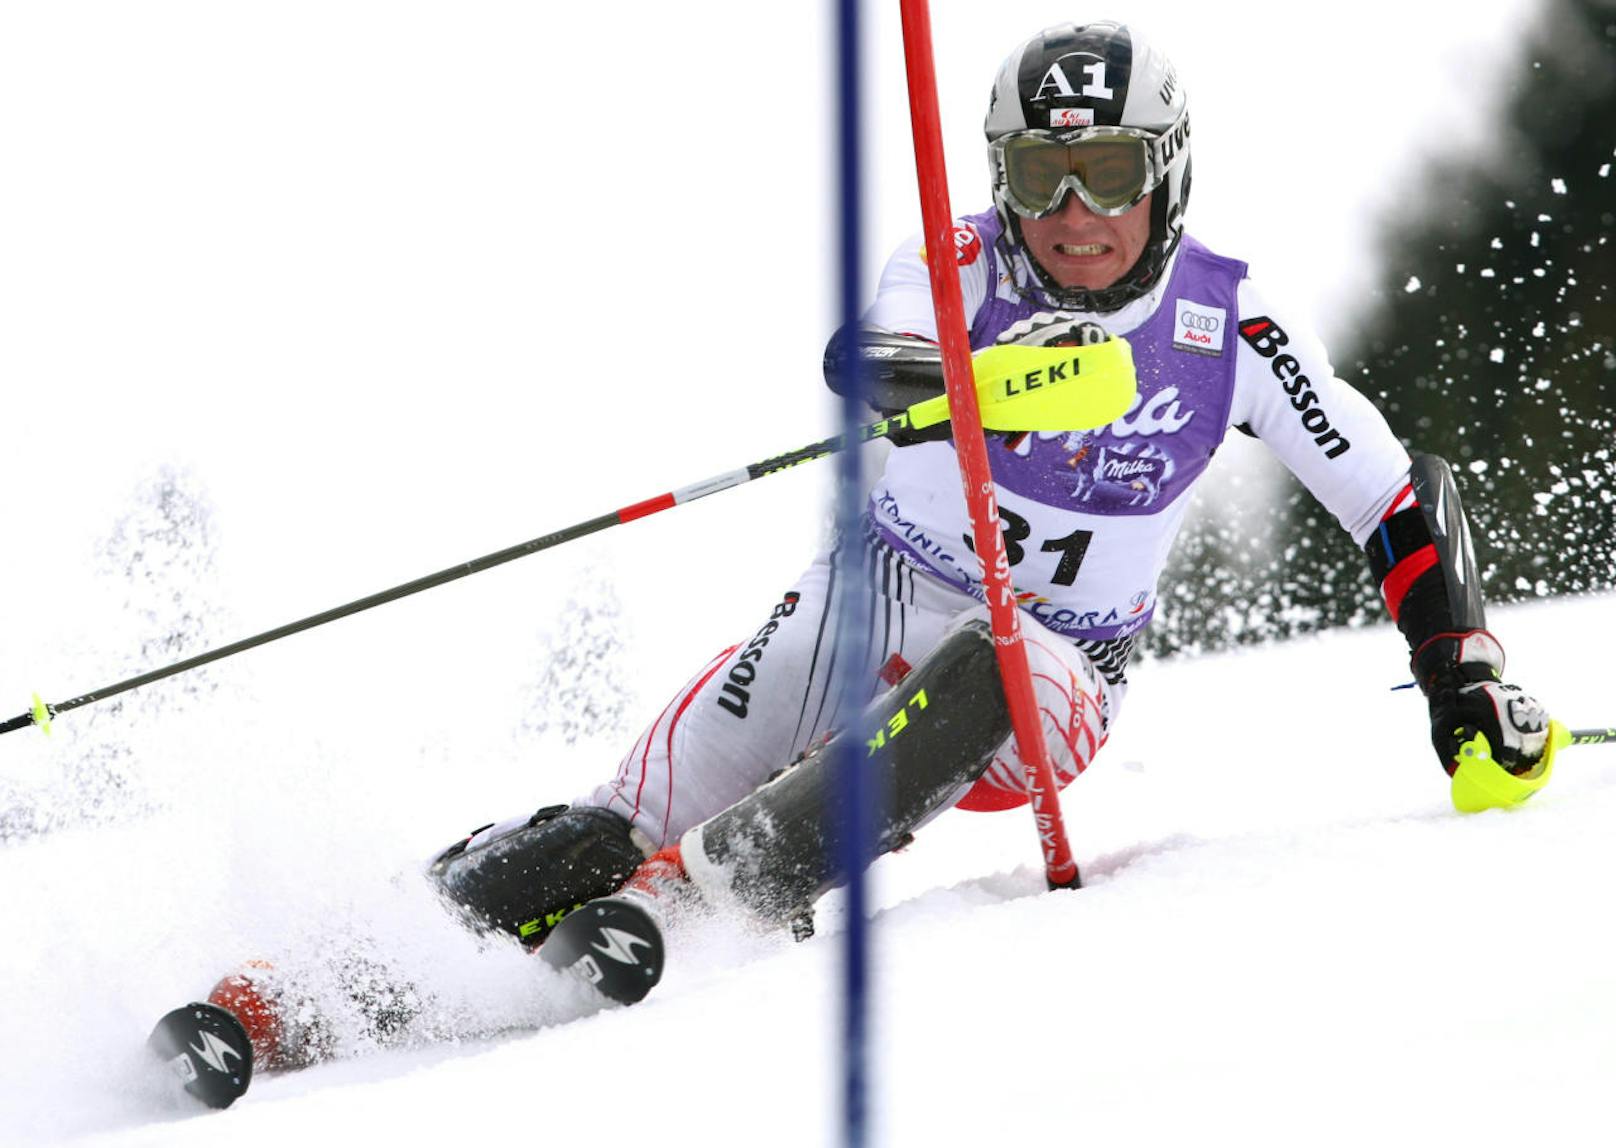 Die erste Sternstunde von Marcel Hirscher! Beim Slalom von Kranjska Gora 2008 fuhr der Salzburger erstmals aufs Podest.